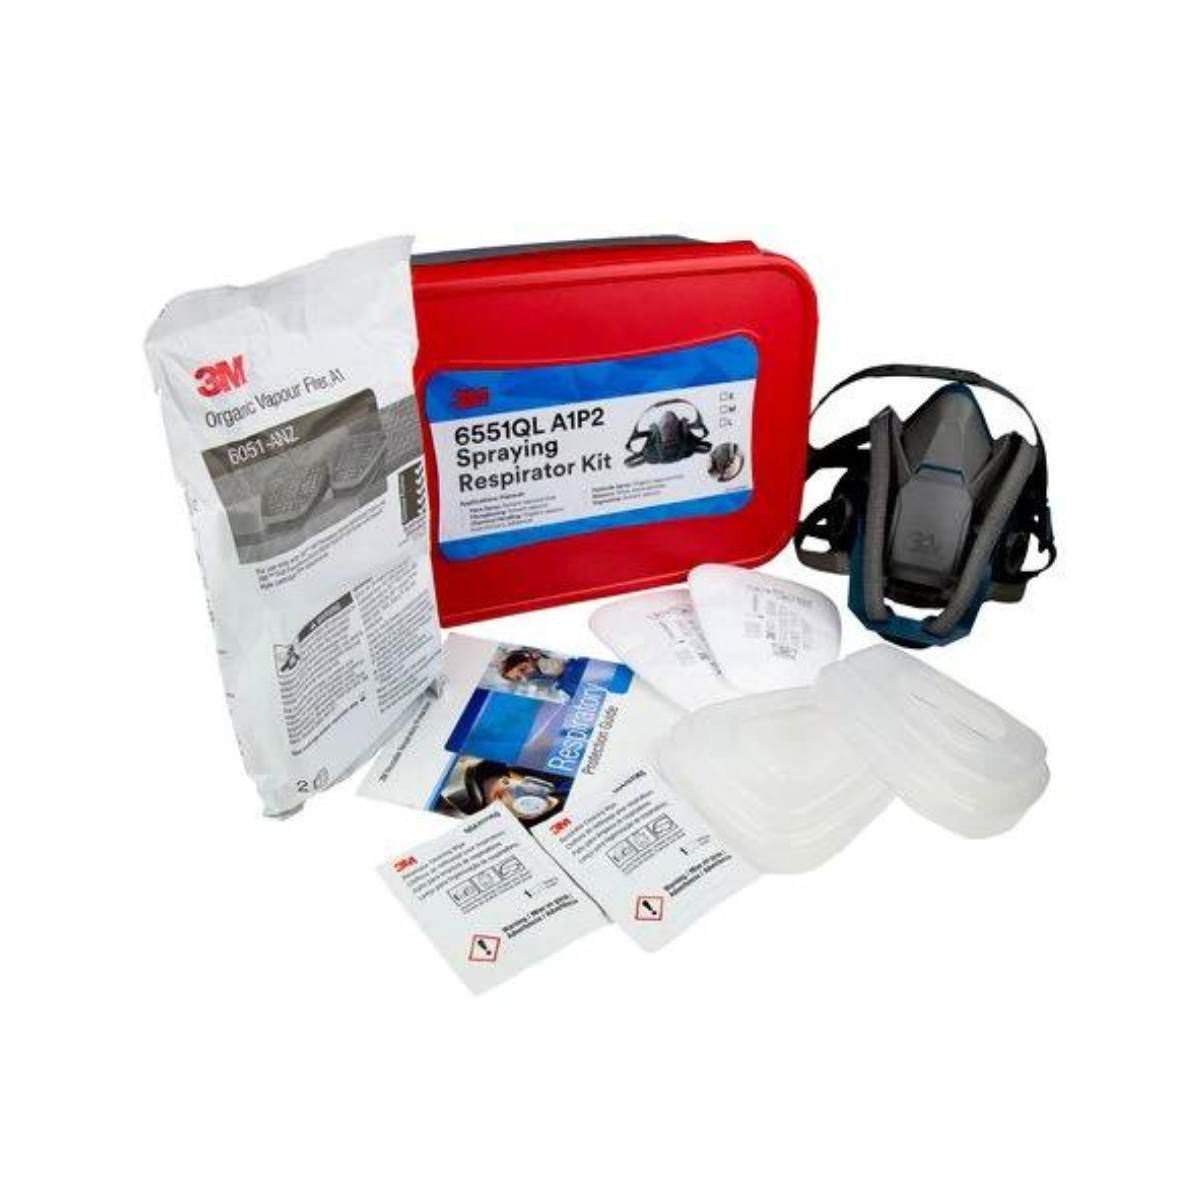 3M™ Spraying Respirator Kit, Half Face Respirator 6551QL Series (per kit)